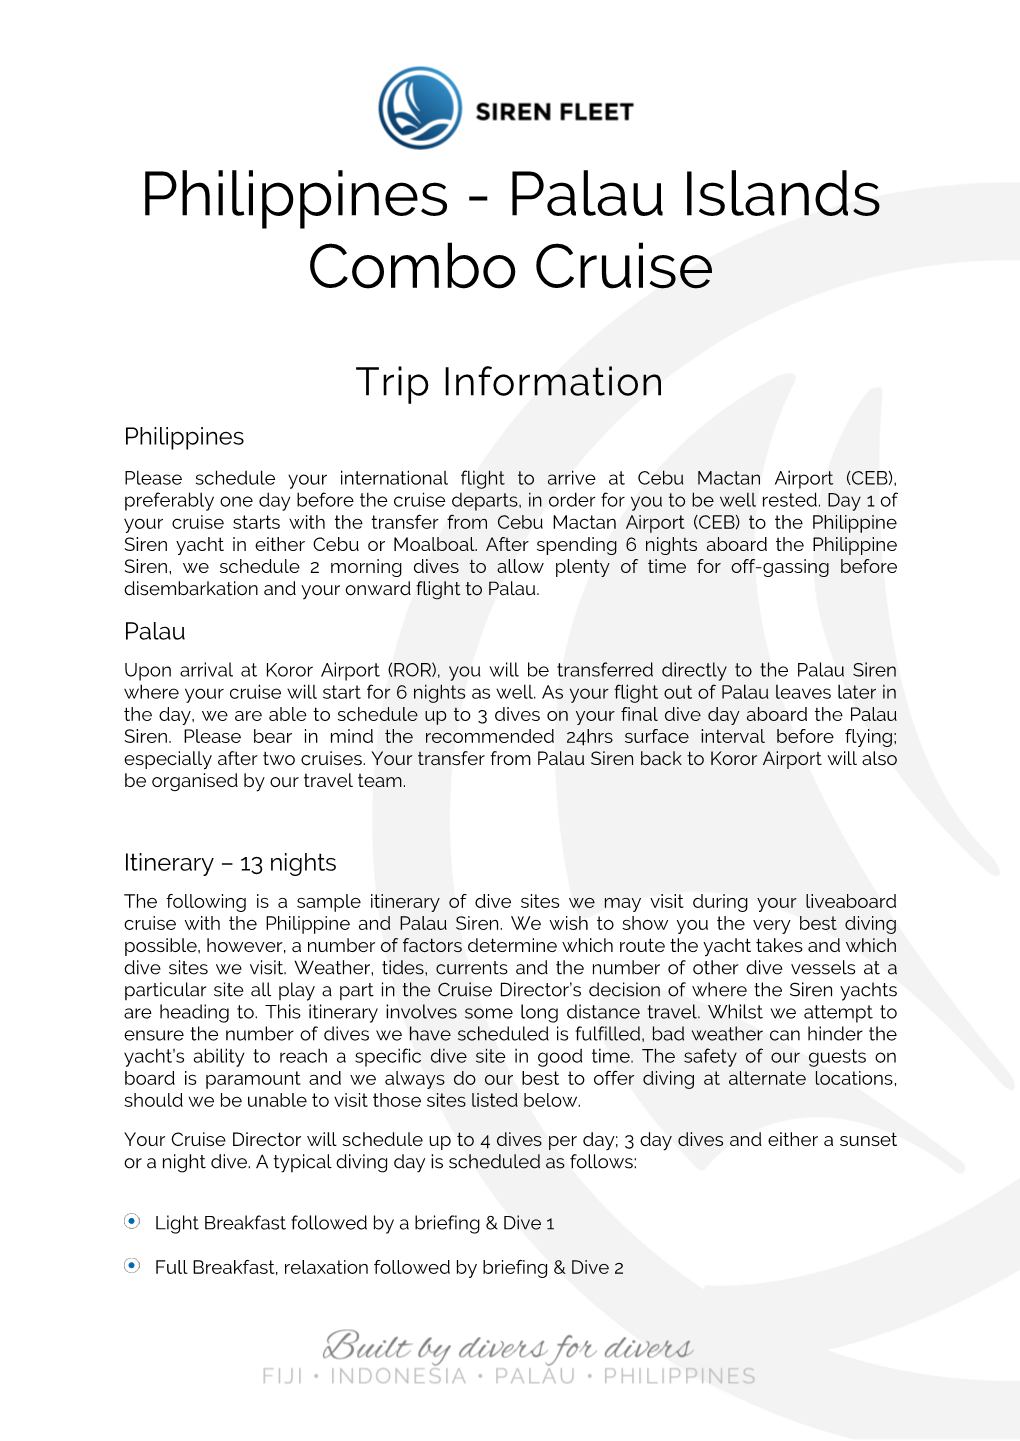 Philippines - Palau Islands Combo Cruise